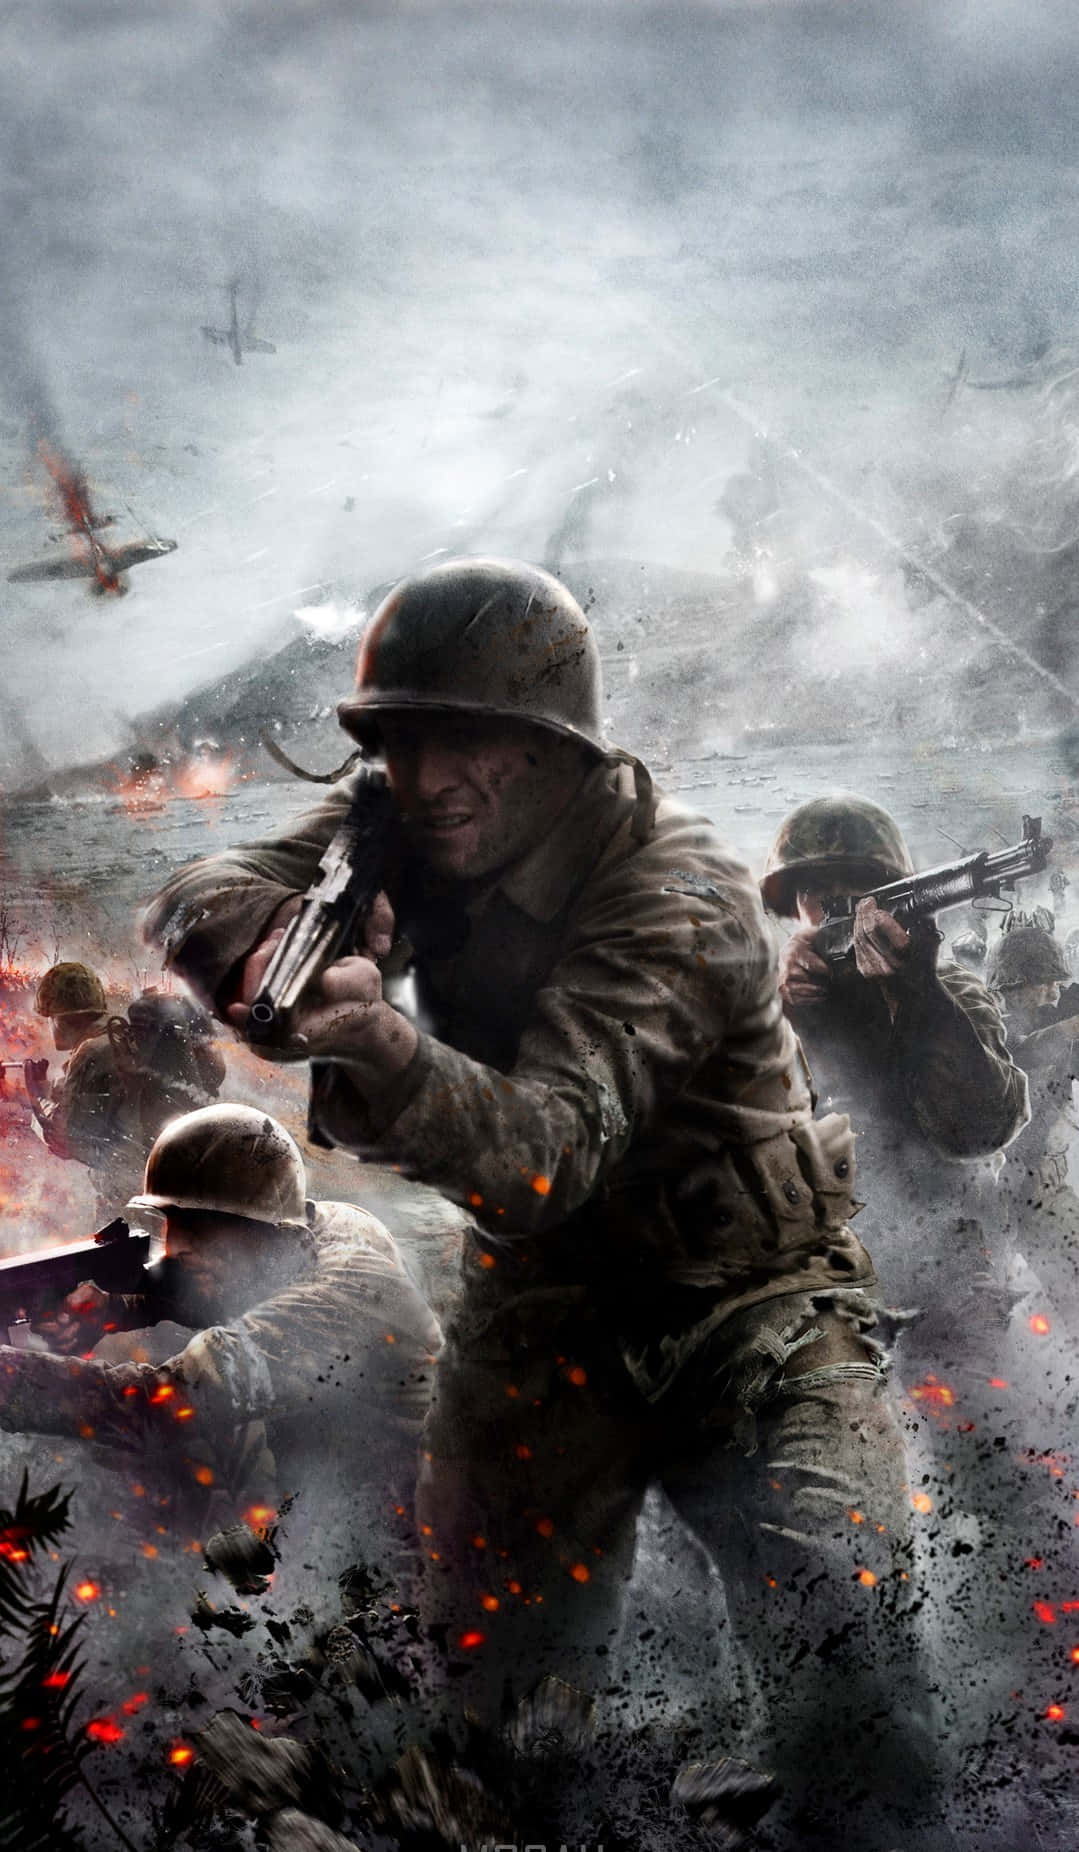 Pixel3xl Battlefield 1 Bakgrund Soldater I En Askig Miljö.